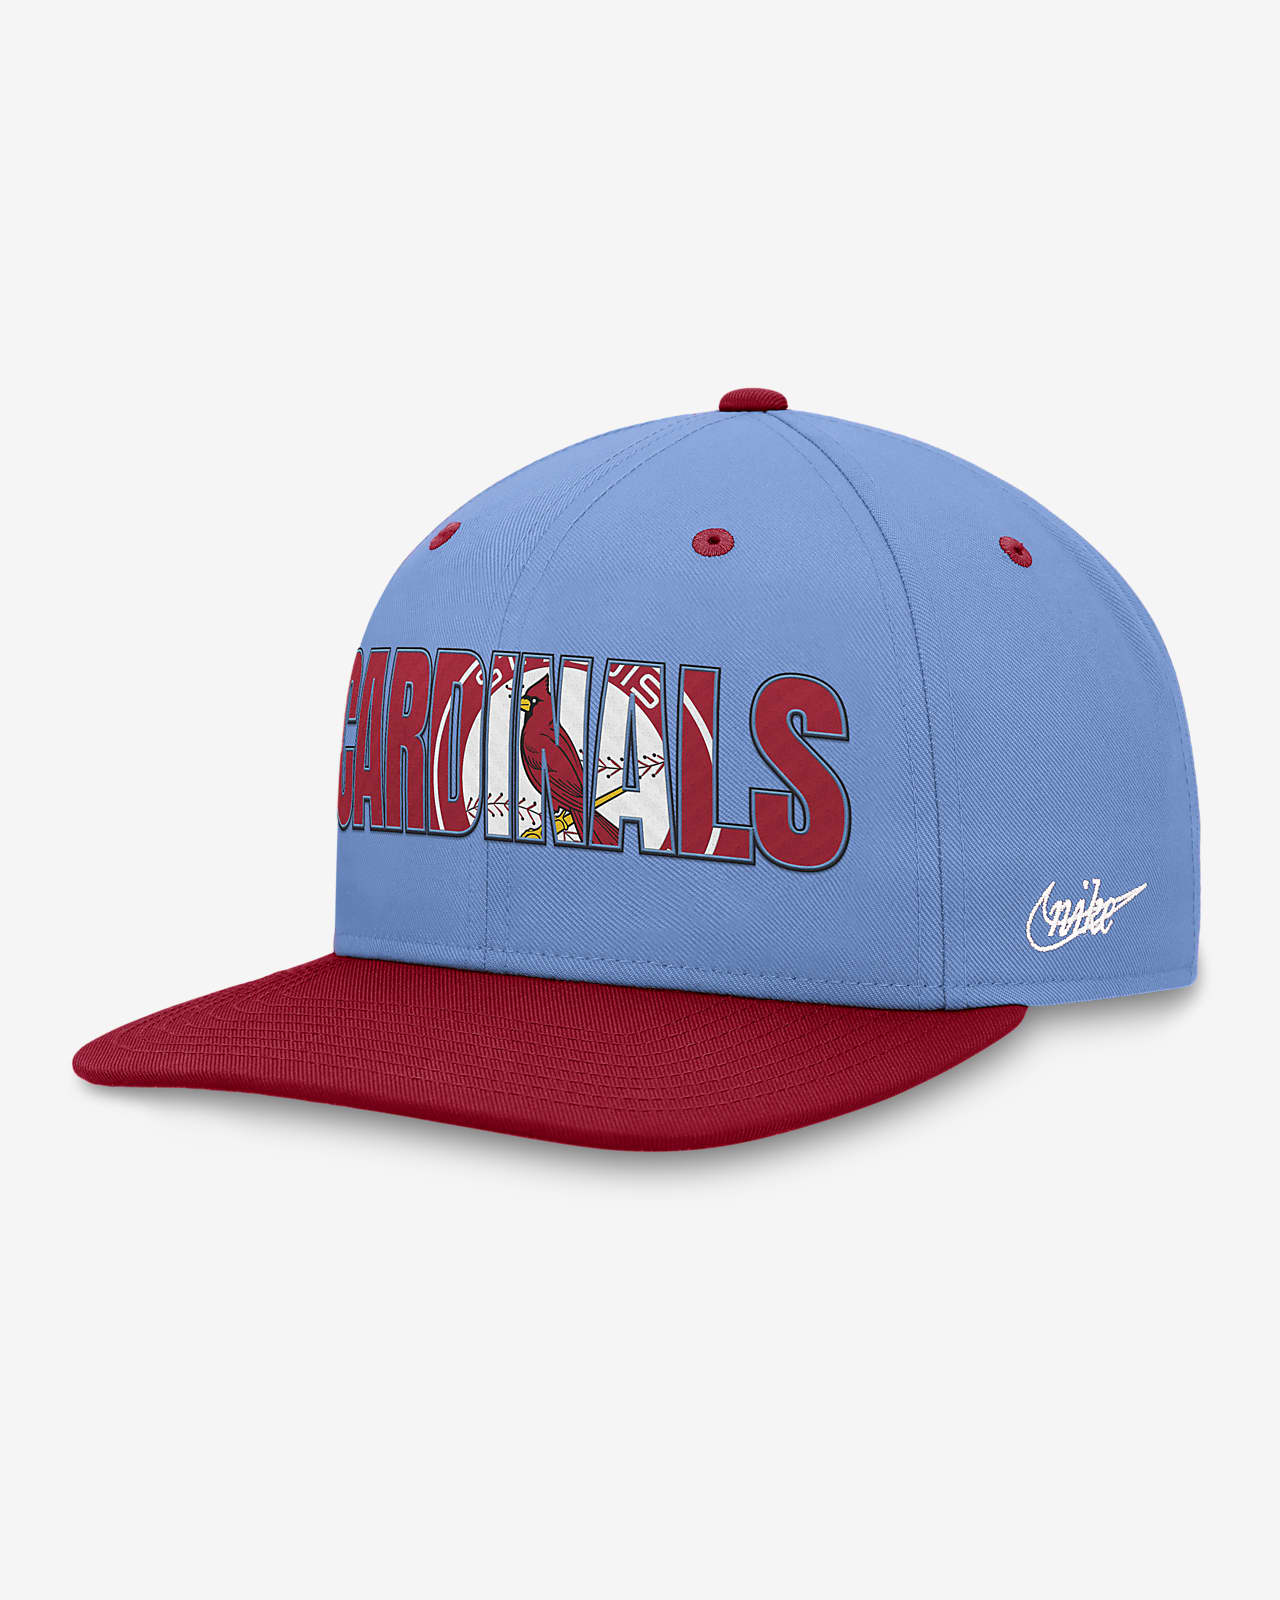 St. Louis Cardinals Primetime Pro Men's Nike Dri-FIT MLB Adjustable Hat